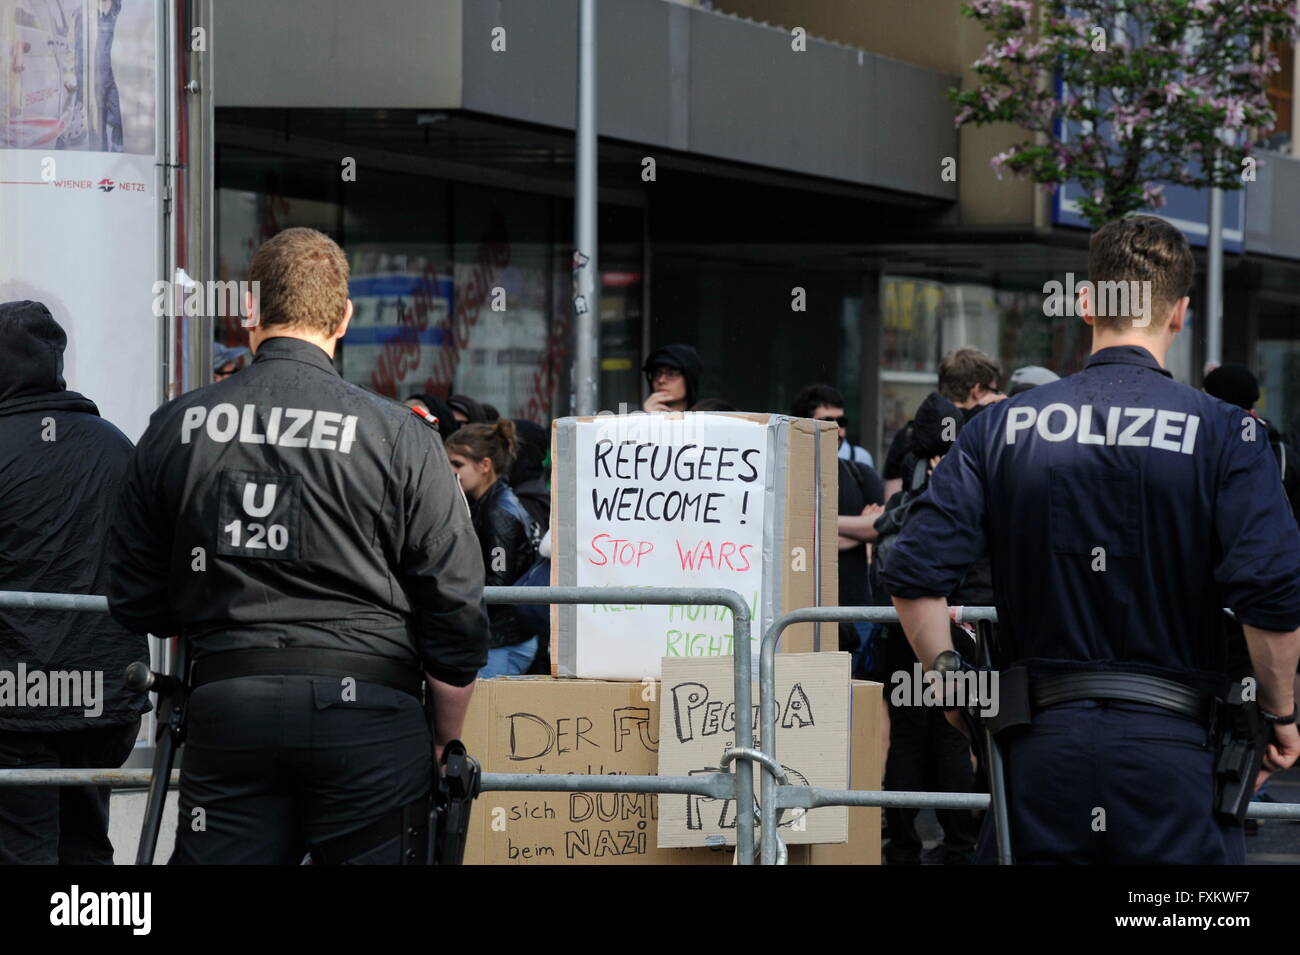 Wien, Österreich. 16. April 2016. Massive Polizeipräsenz bei einer Anti-Pegida-Protest in Wien. Mehrere linke Organisationen protestieren gegen die Pegida-Rallye.  Bildnachweis: Franz Perc/Alamy Live-Nachrichten Stockfoto